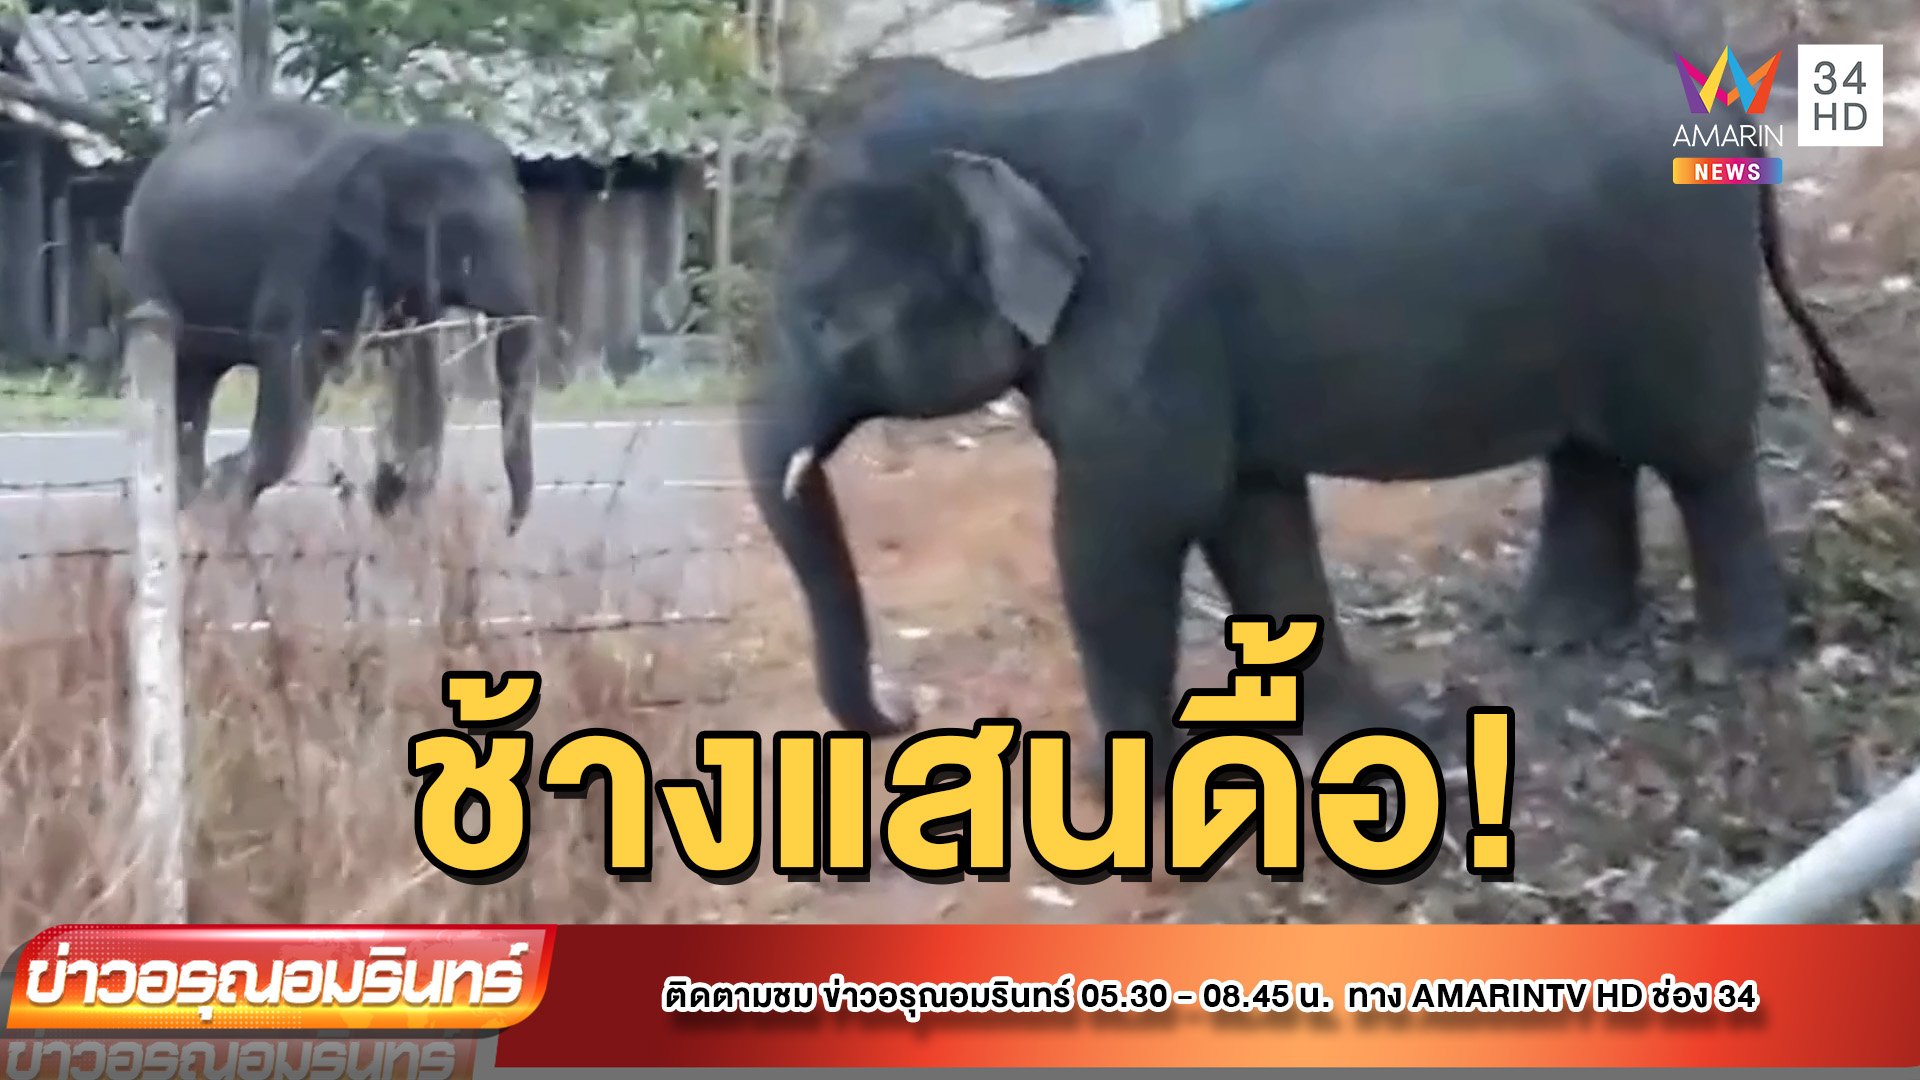 สุดดื้อ “หงษ์ทอง” ช้างน้อยแสนซน ดื้อสุดในโขลง เจ้าหน้าที่ตามไล่จนเหนื่อย | ข่าวอรุณอมรินทร์ | 19 พ.ค. 65 | AMARIN TVHD34